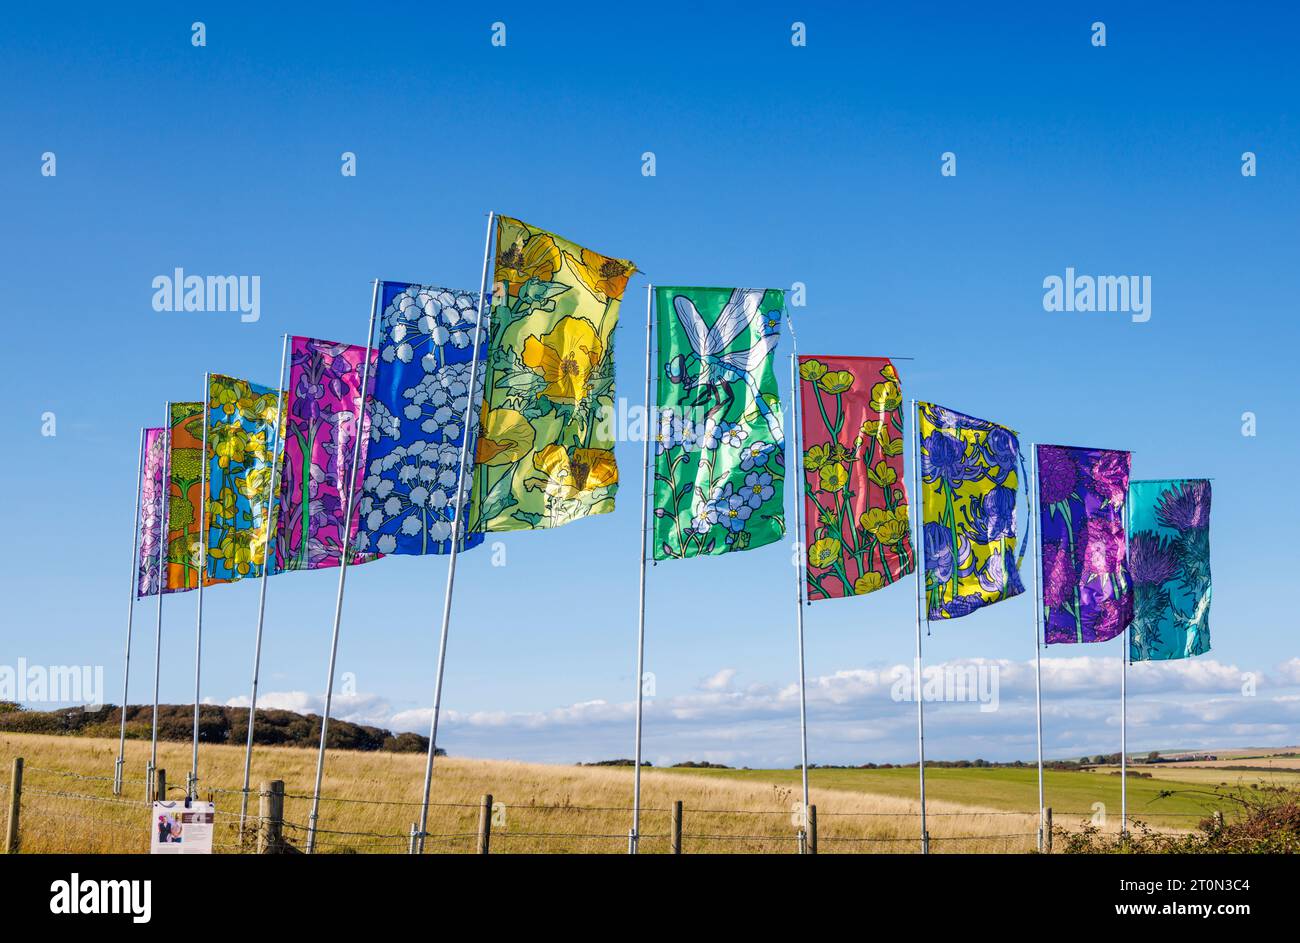 Une conversation appelée By the Wind, une installation d'art public de drapeaux colorés soufflant dans le vent à la réserve naturelle de Seaford Head dans l'East Sussex Banque D'Images